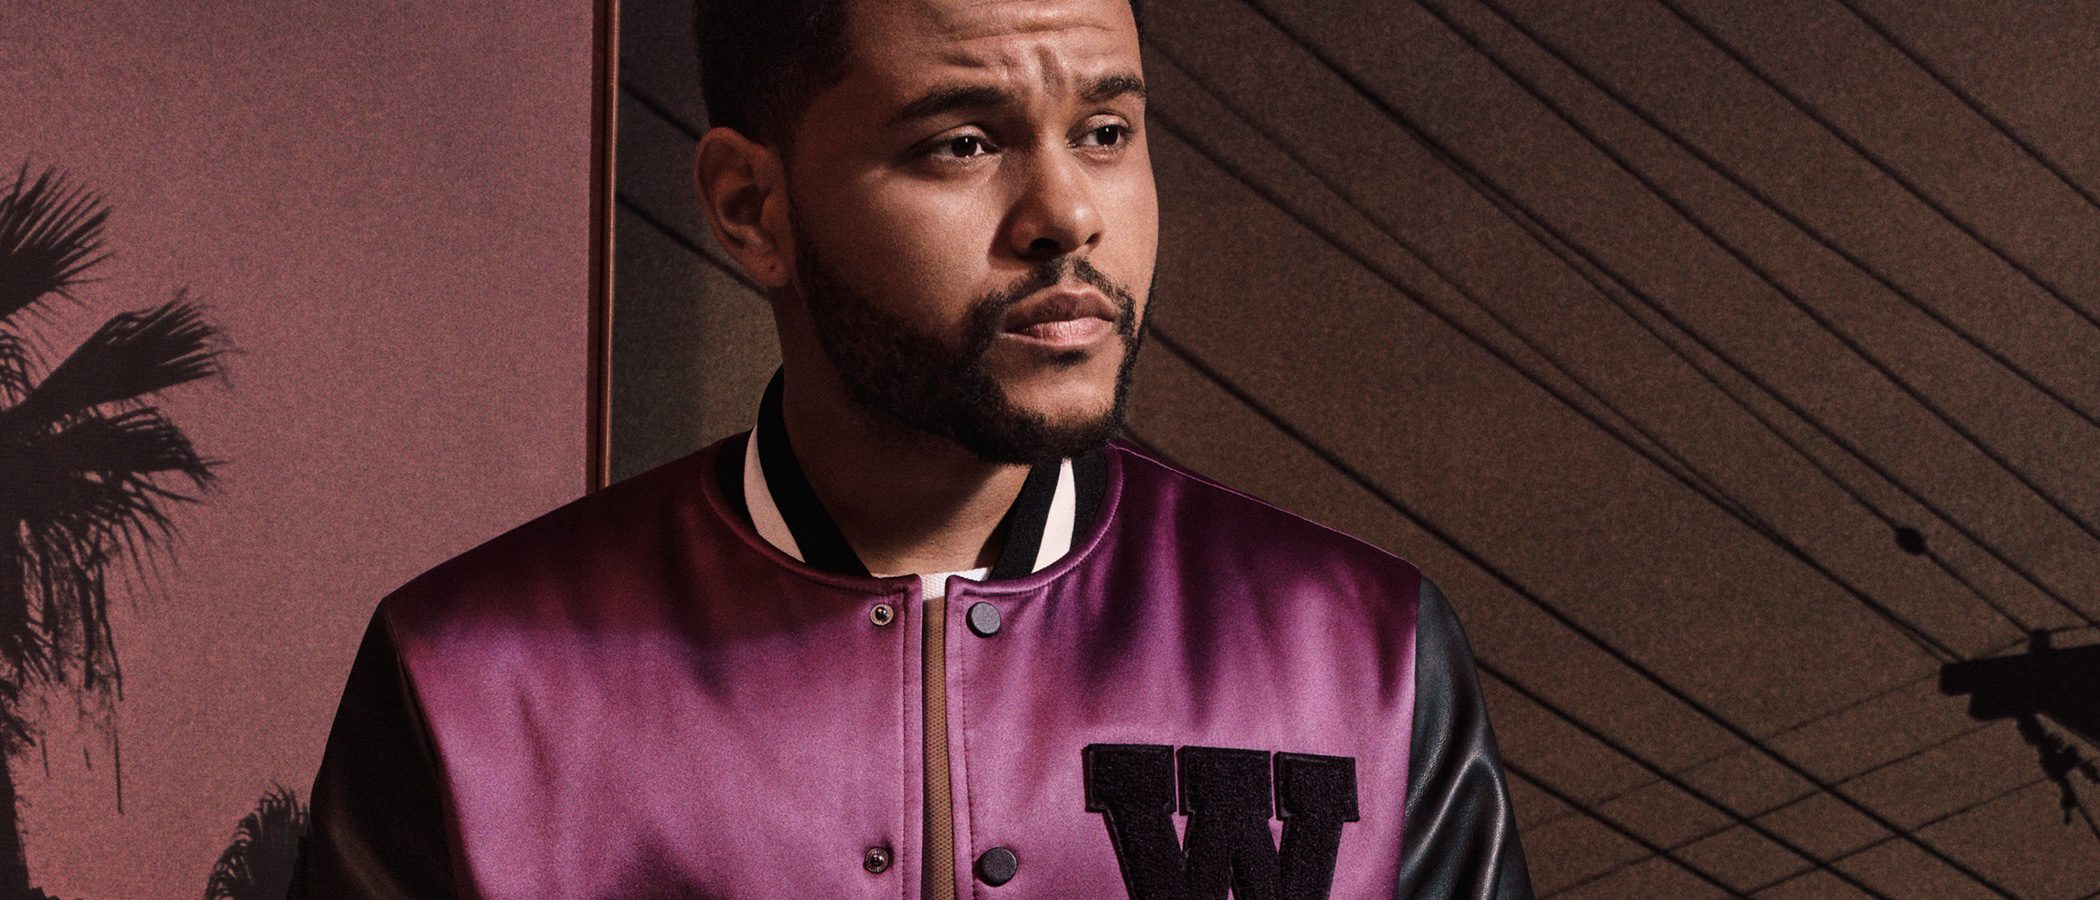 The Weeknd colaborará por segunda vez con H&M para la campaña de otoño/invierno 2017/2018